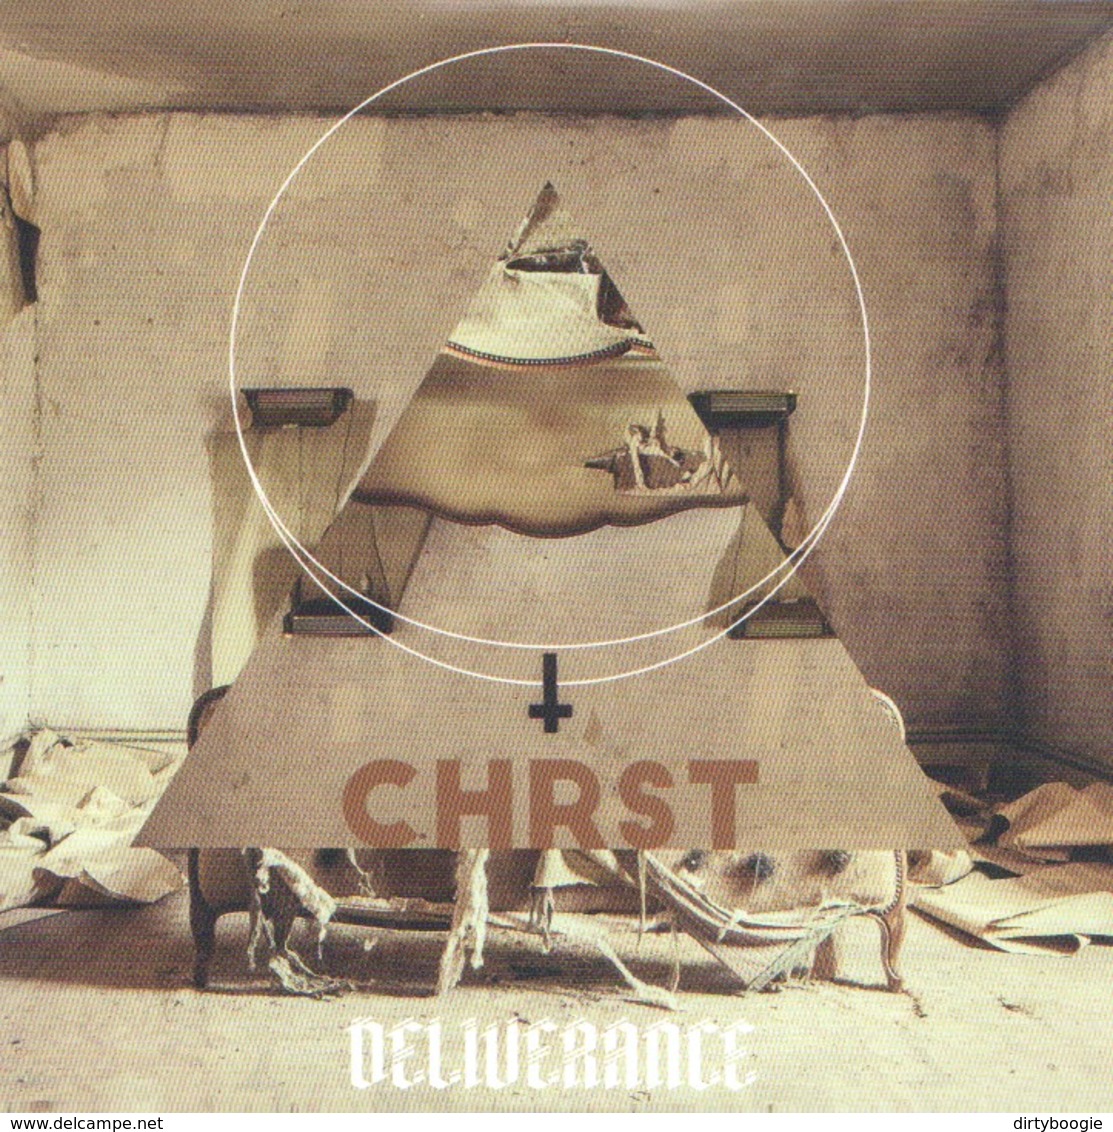 DELIVERANCE - Chrst - CD - Black Death Metal - Hard Rock & Metal